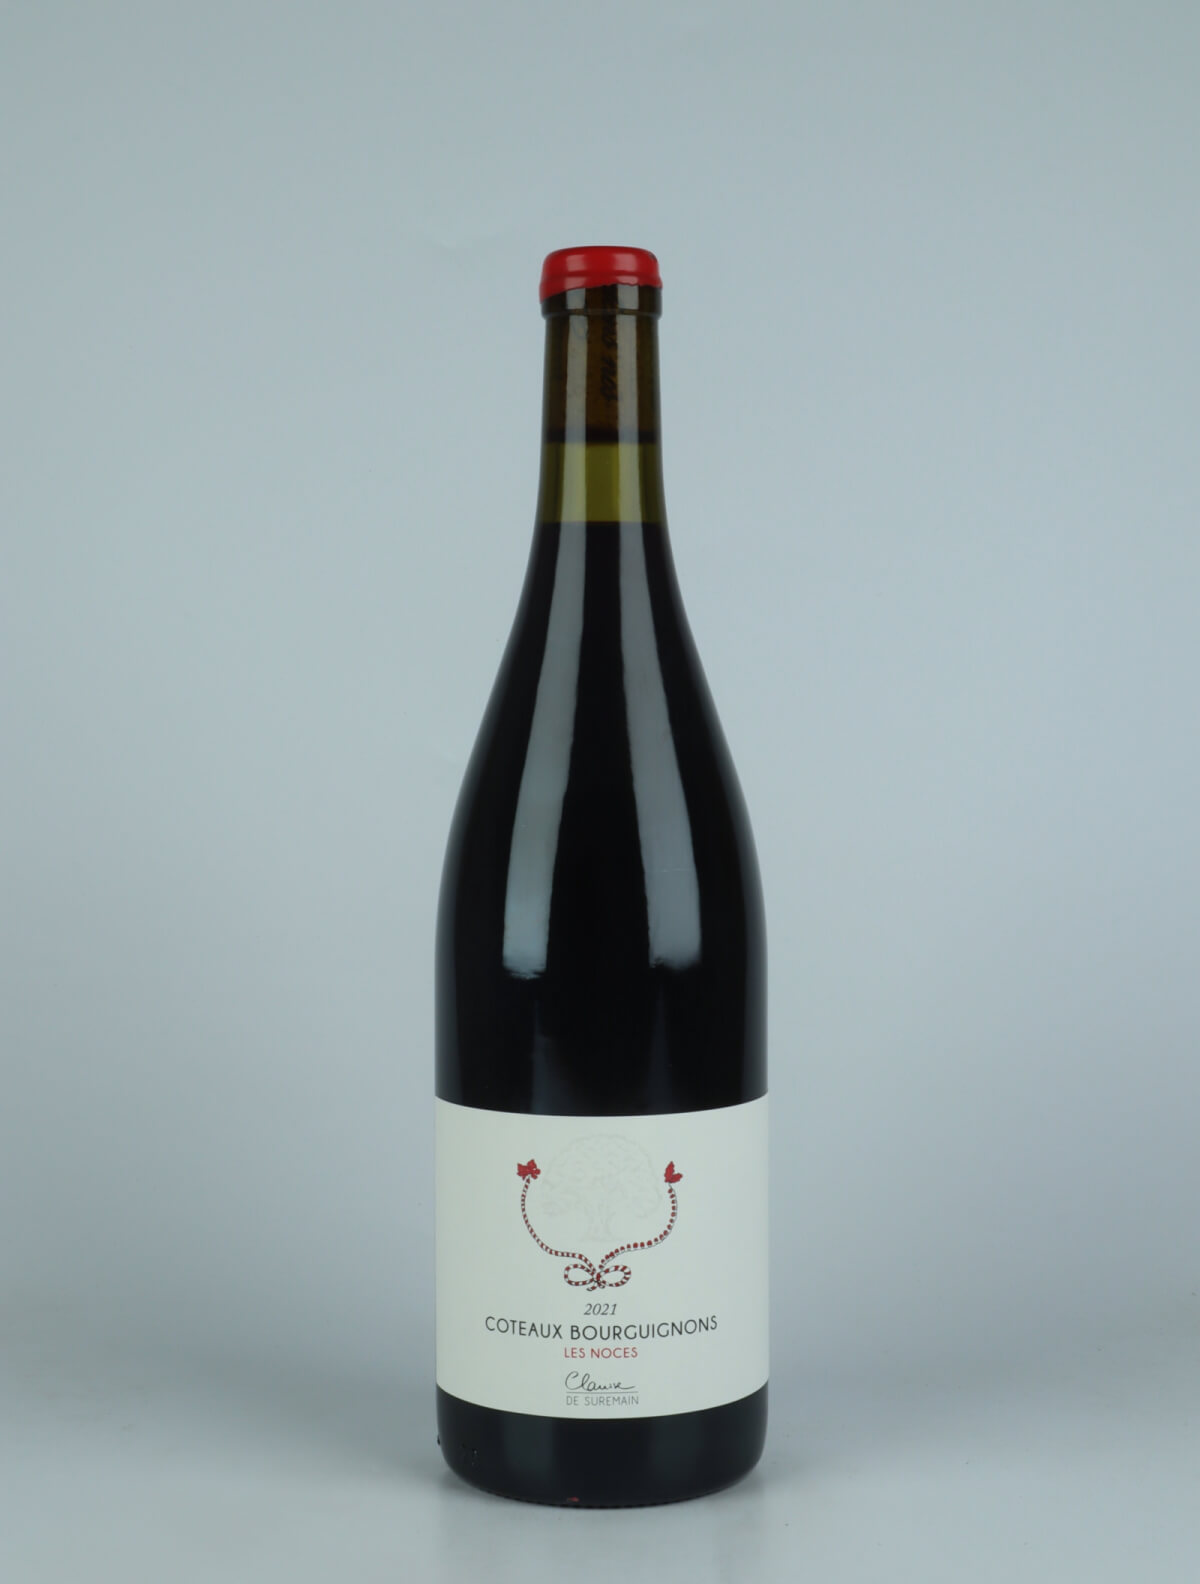 A bottle 2021 Côteaux Bourguignons - Les Noces Red wine from Clarisse de Suremain, Burgundy in France